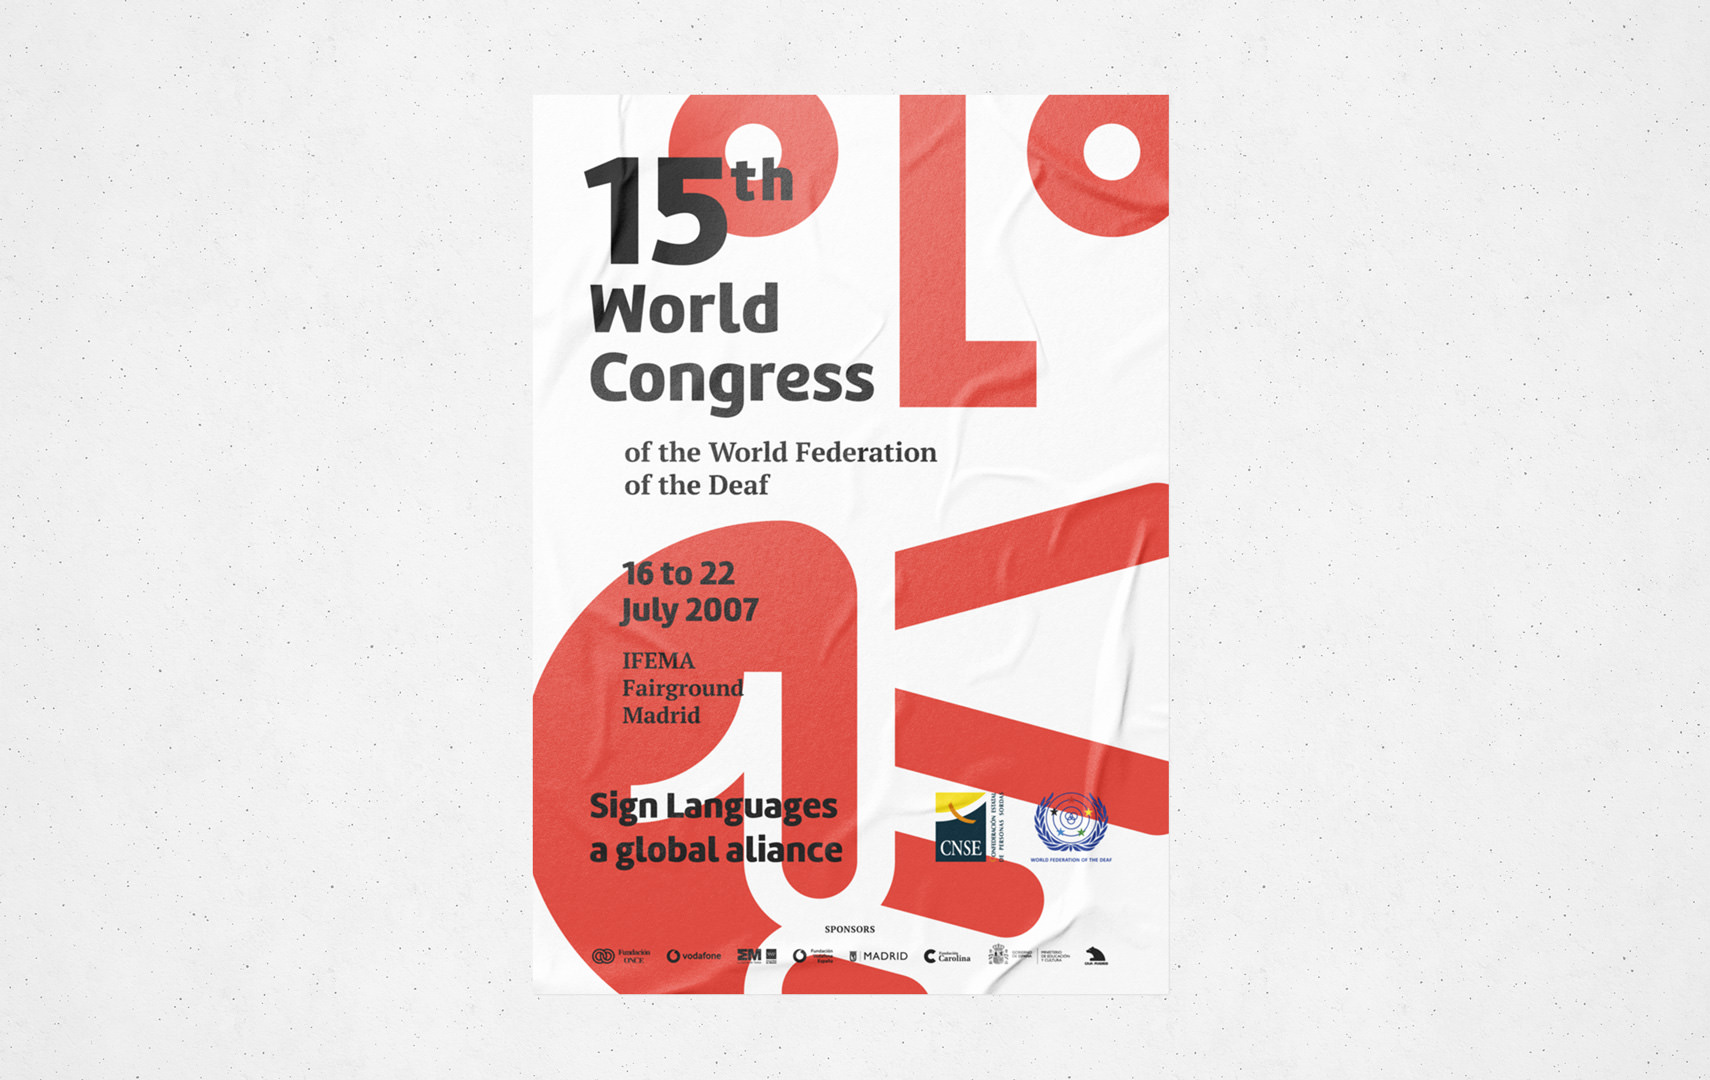 Diseño del cartel del evento de la WFD